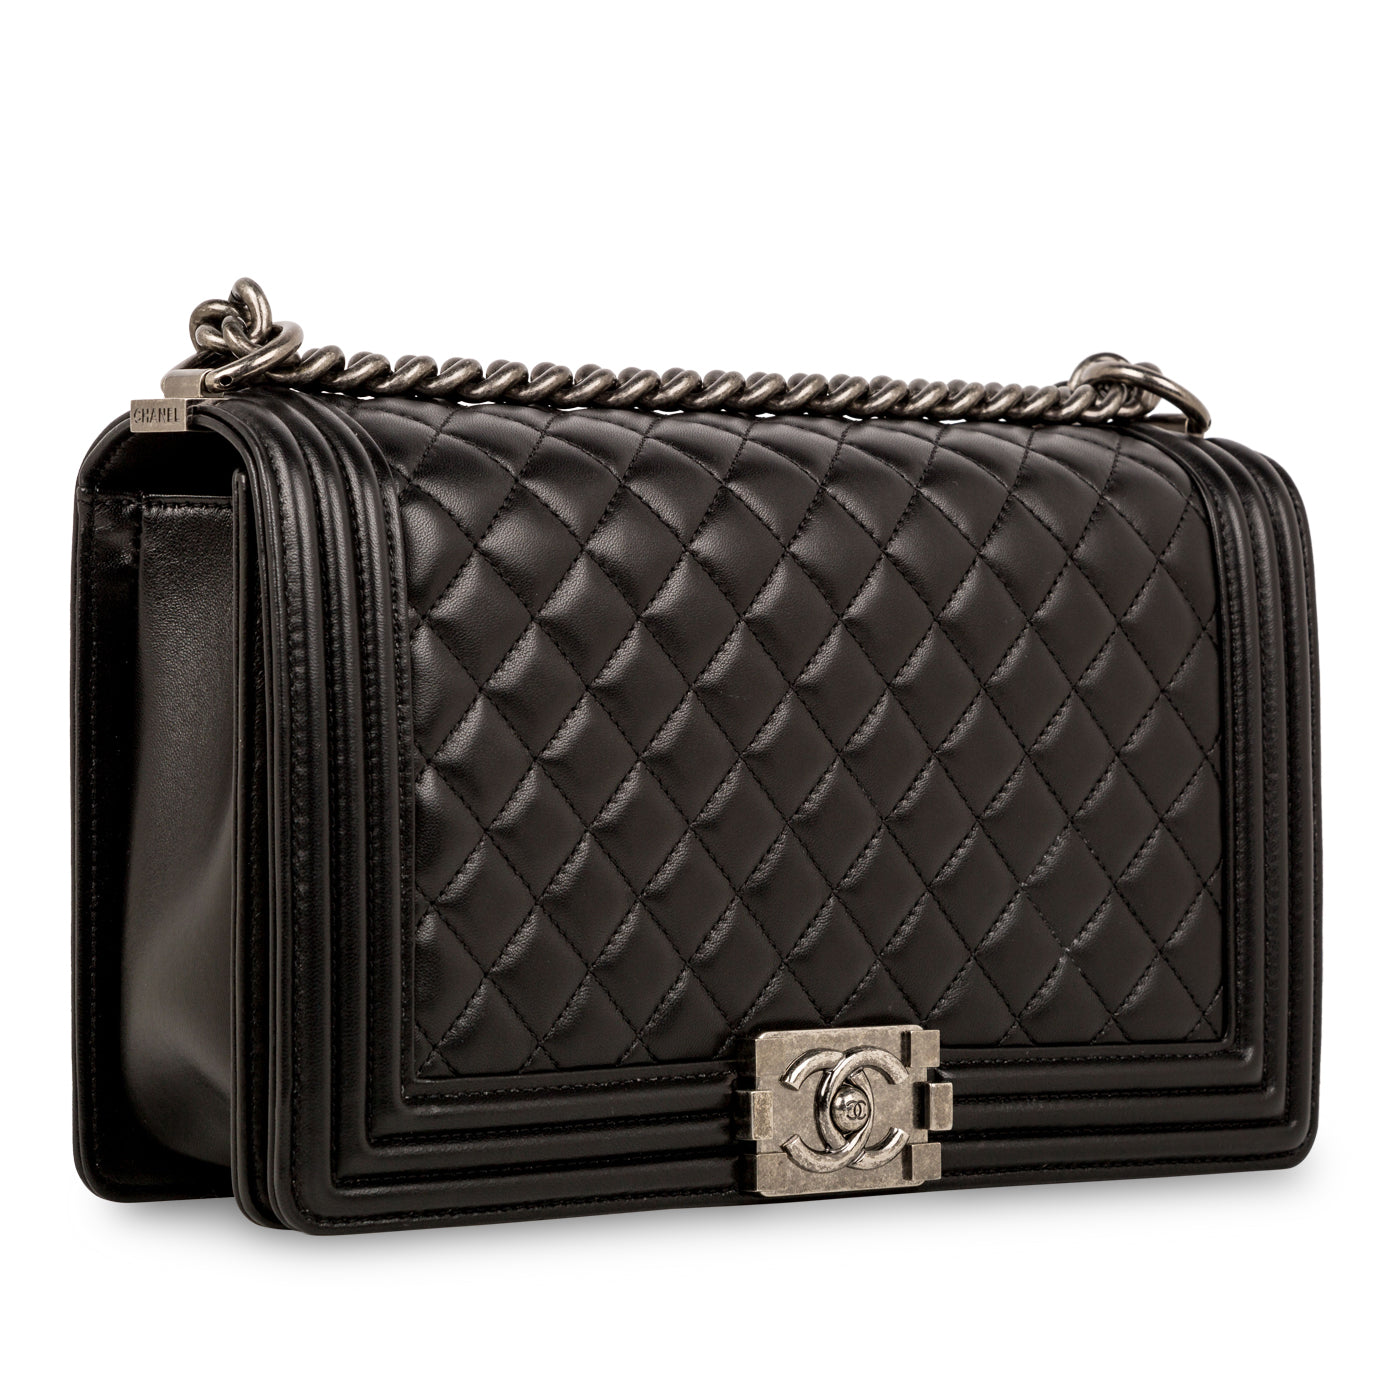 Chanel - Boy Bag - New Medium - Black Lambskin - RHW - Pre Loved